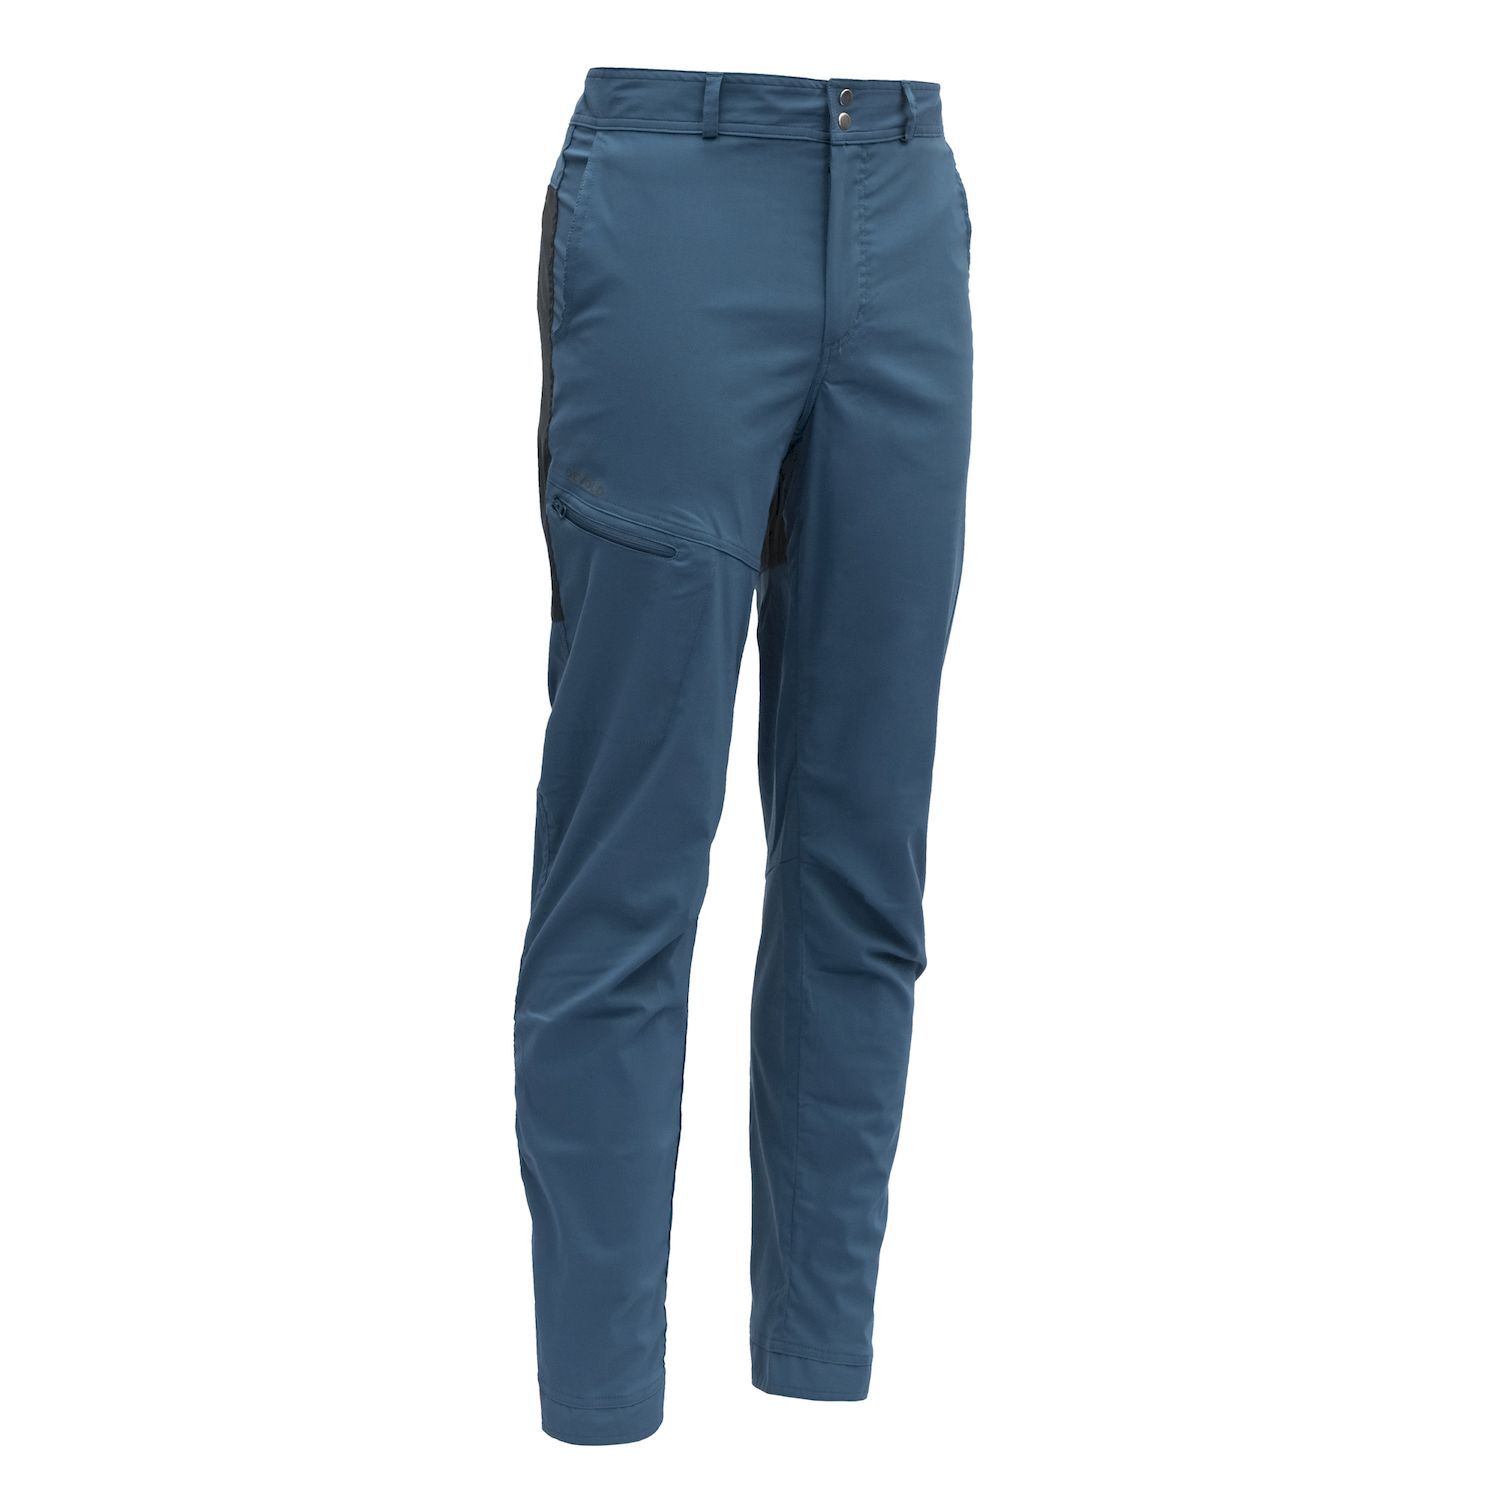 Devold Herøy - Walking trousers - Men's